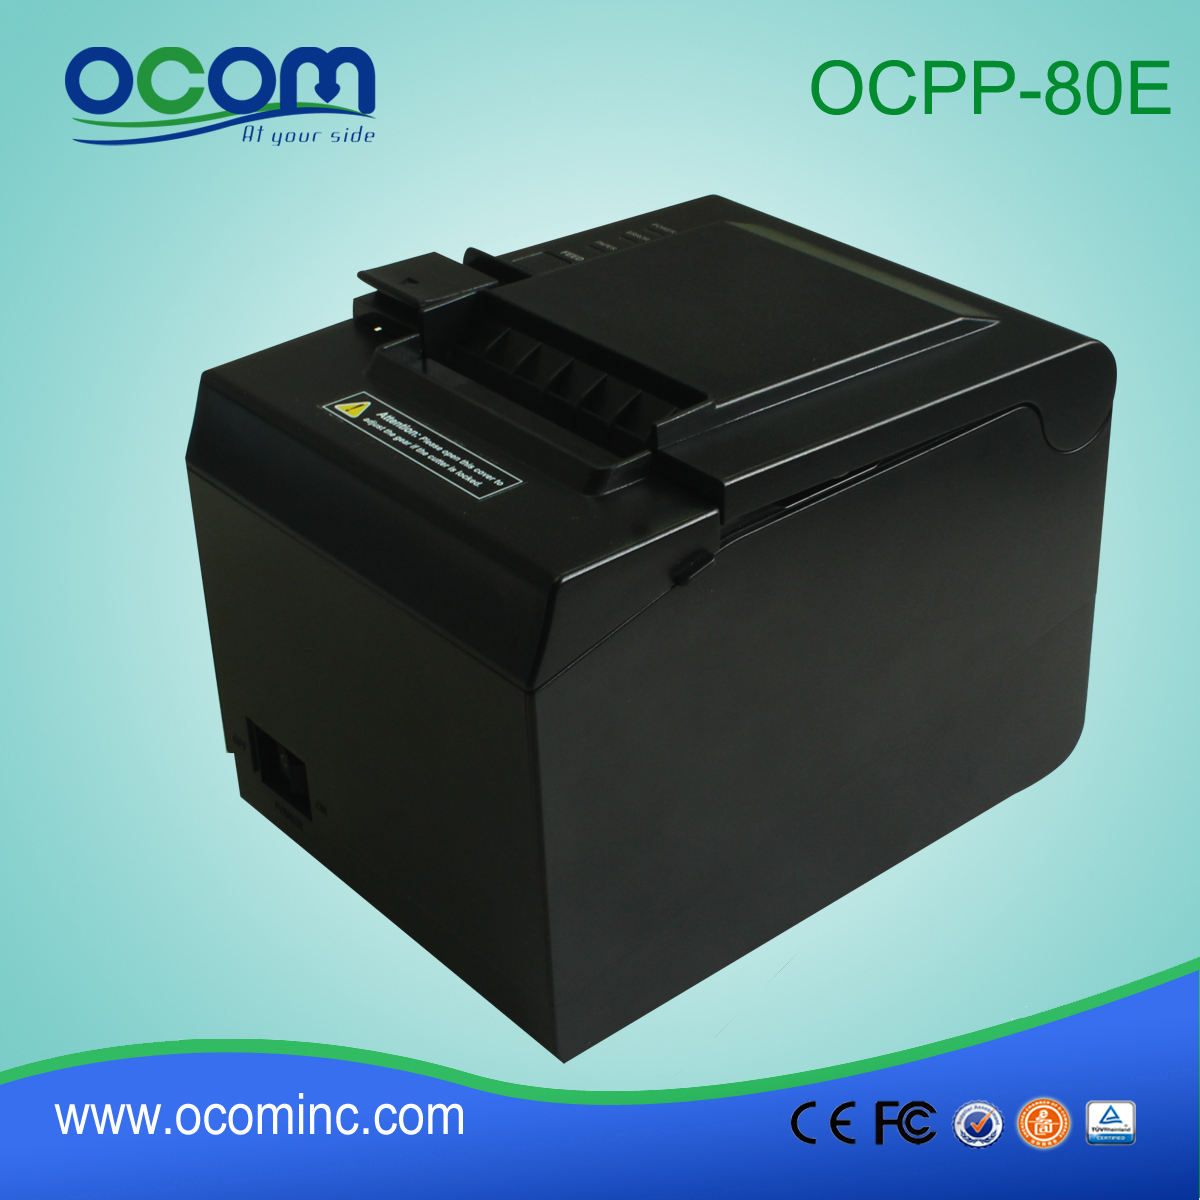 OCPP 80E Impressora térmica de recebimento de POS de alta velocidade de 80 mm com corte automático para restaurante